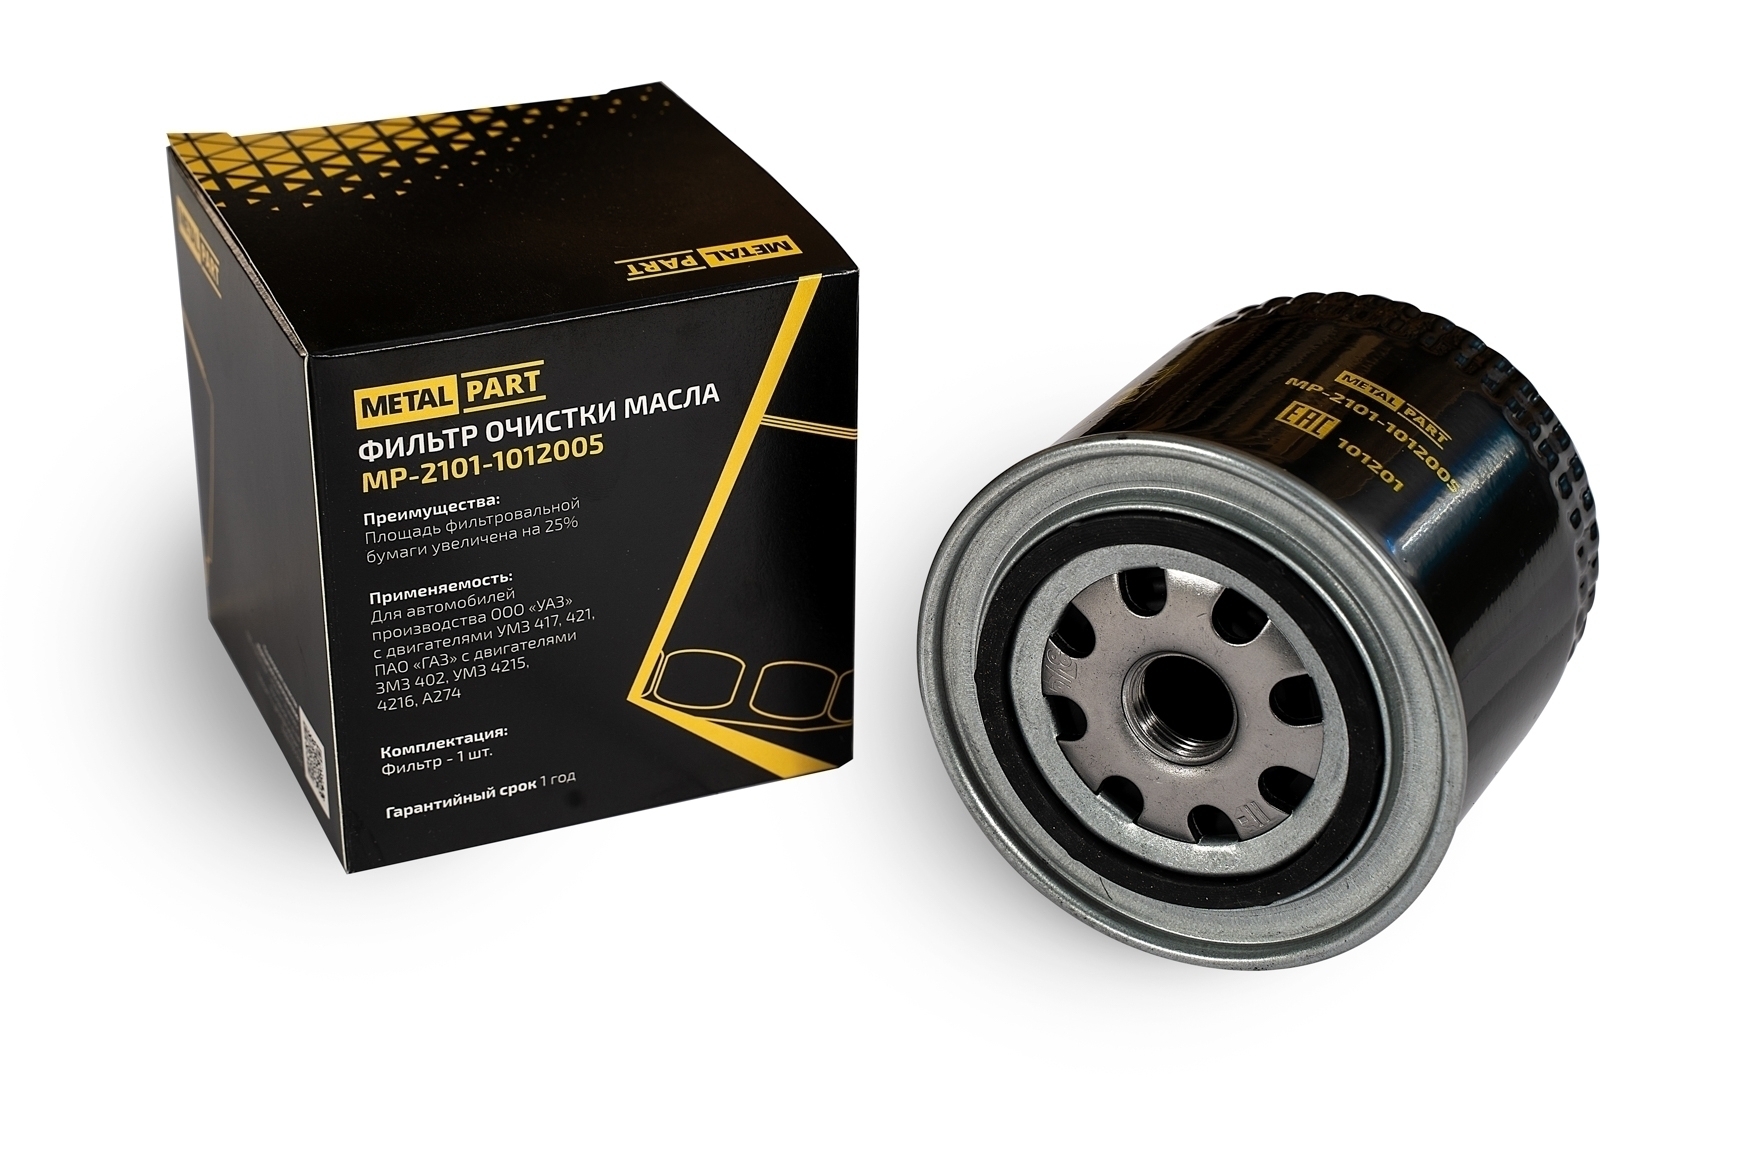 Фильтр очистки масла "MetalPart" для автомобилей ВАЗ 2101-07, ГАЗ, УАЗ с карбюраторным двигателем 